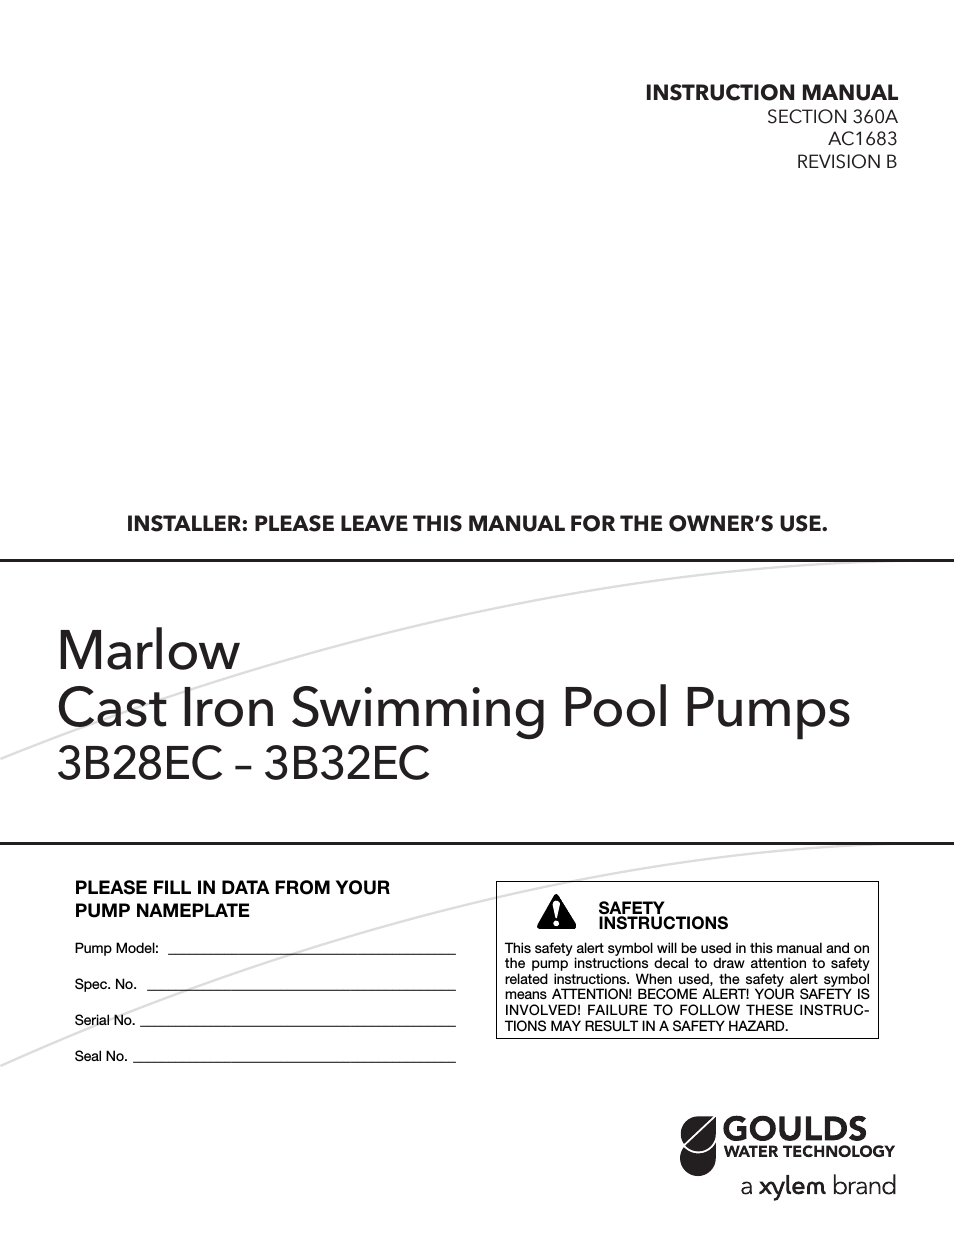 AC1683B Marlow Series Cast Iron Swimming Pool Pumps 3B28EC – 3B32EC